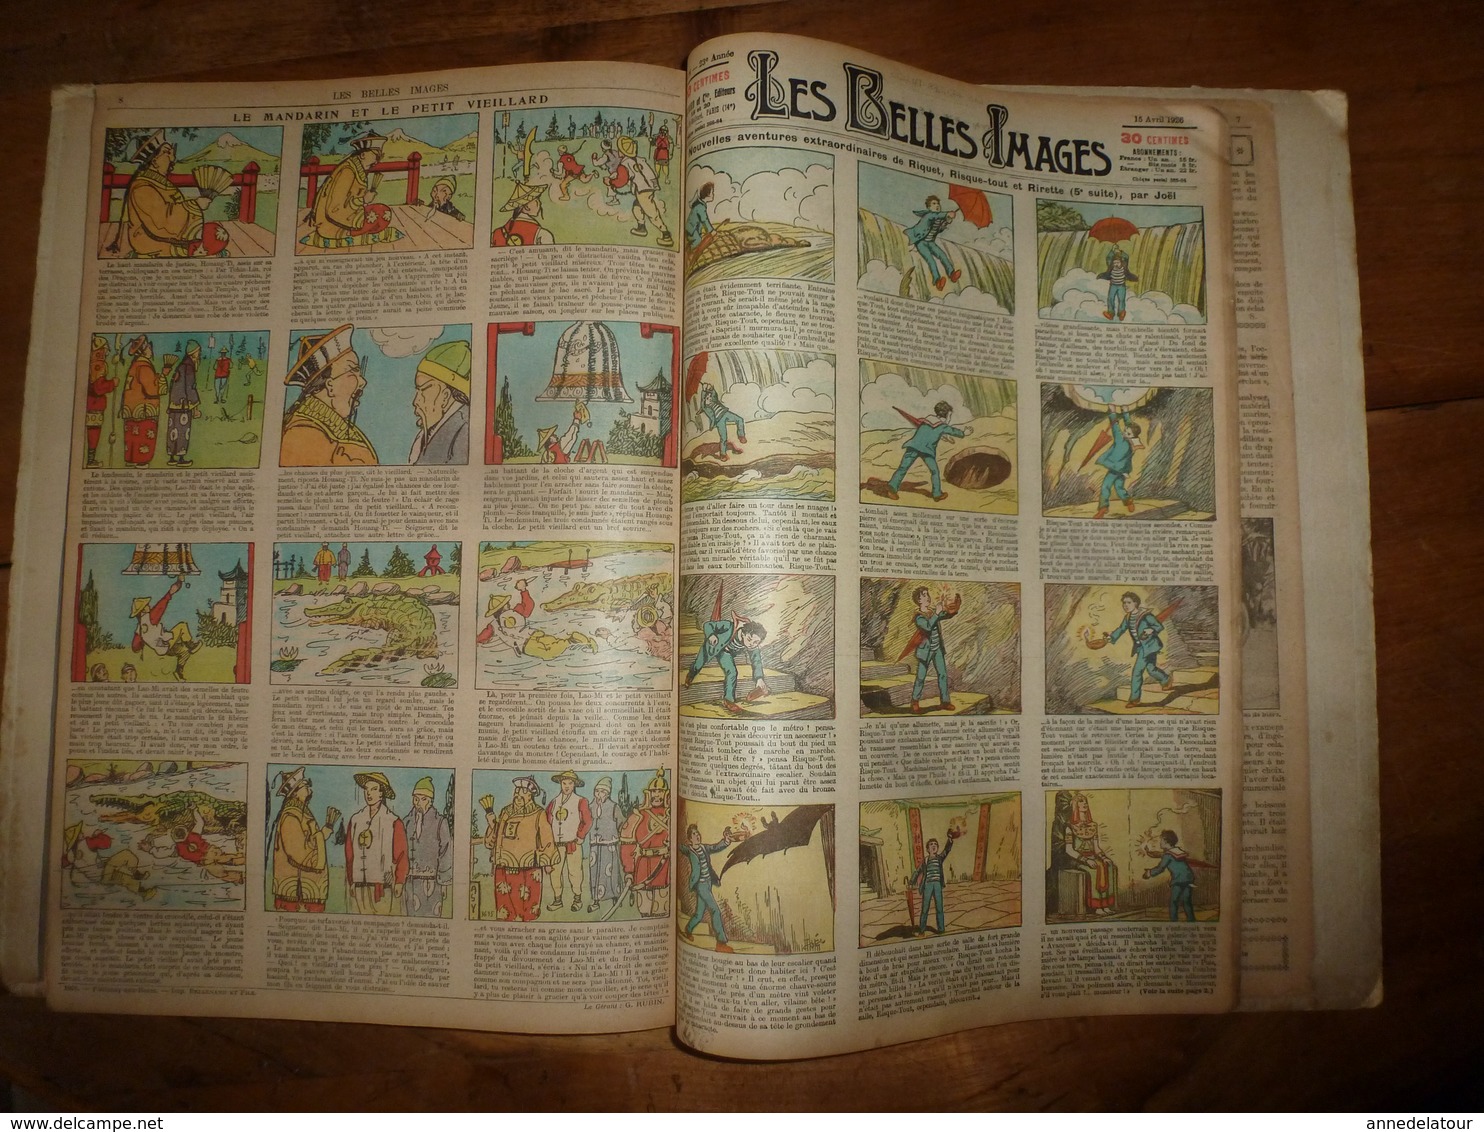 1925-1926 Album des BELLES IMAGES  du N° 1082 daté 11 juin 1925 au N° 1132 daté 27 mai 1926  (51 journaux)